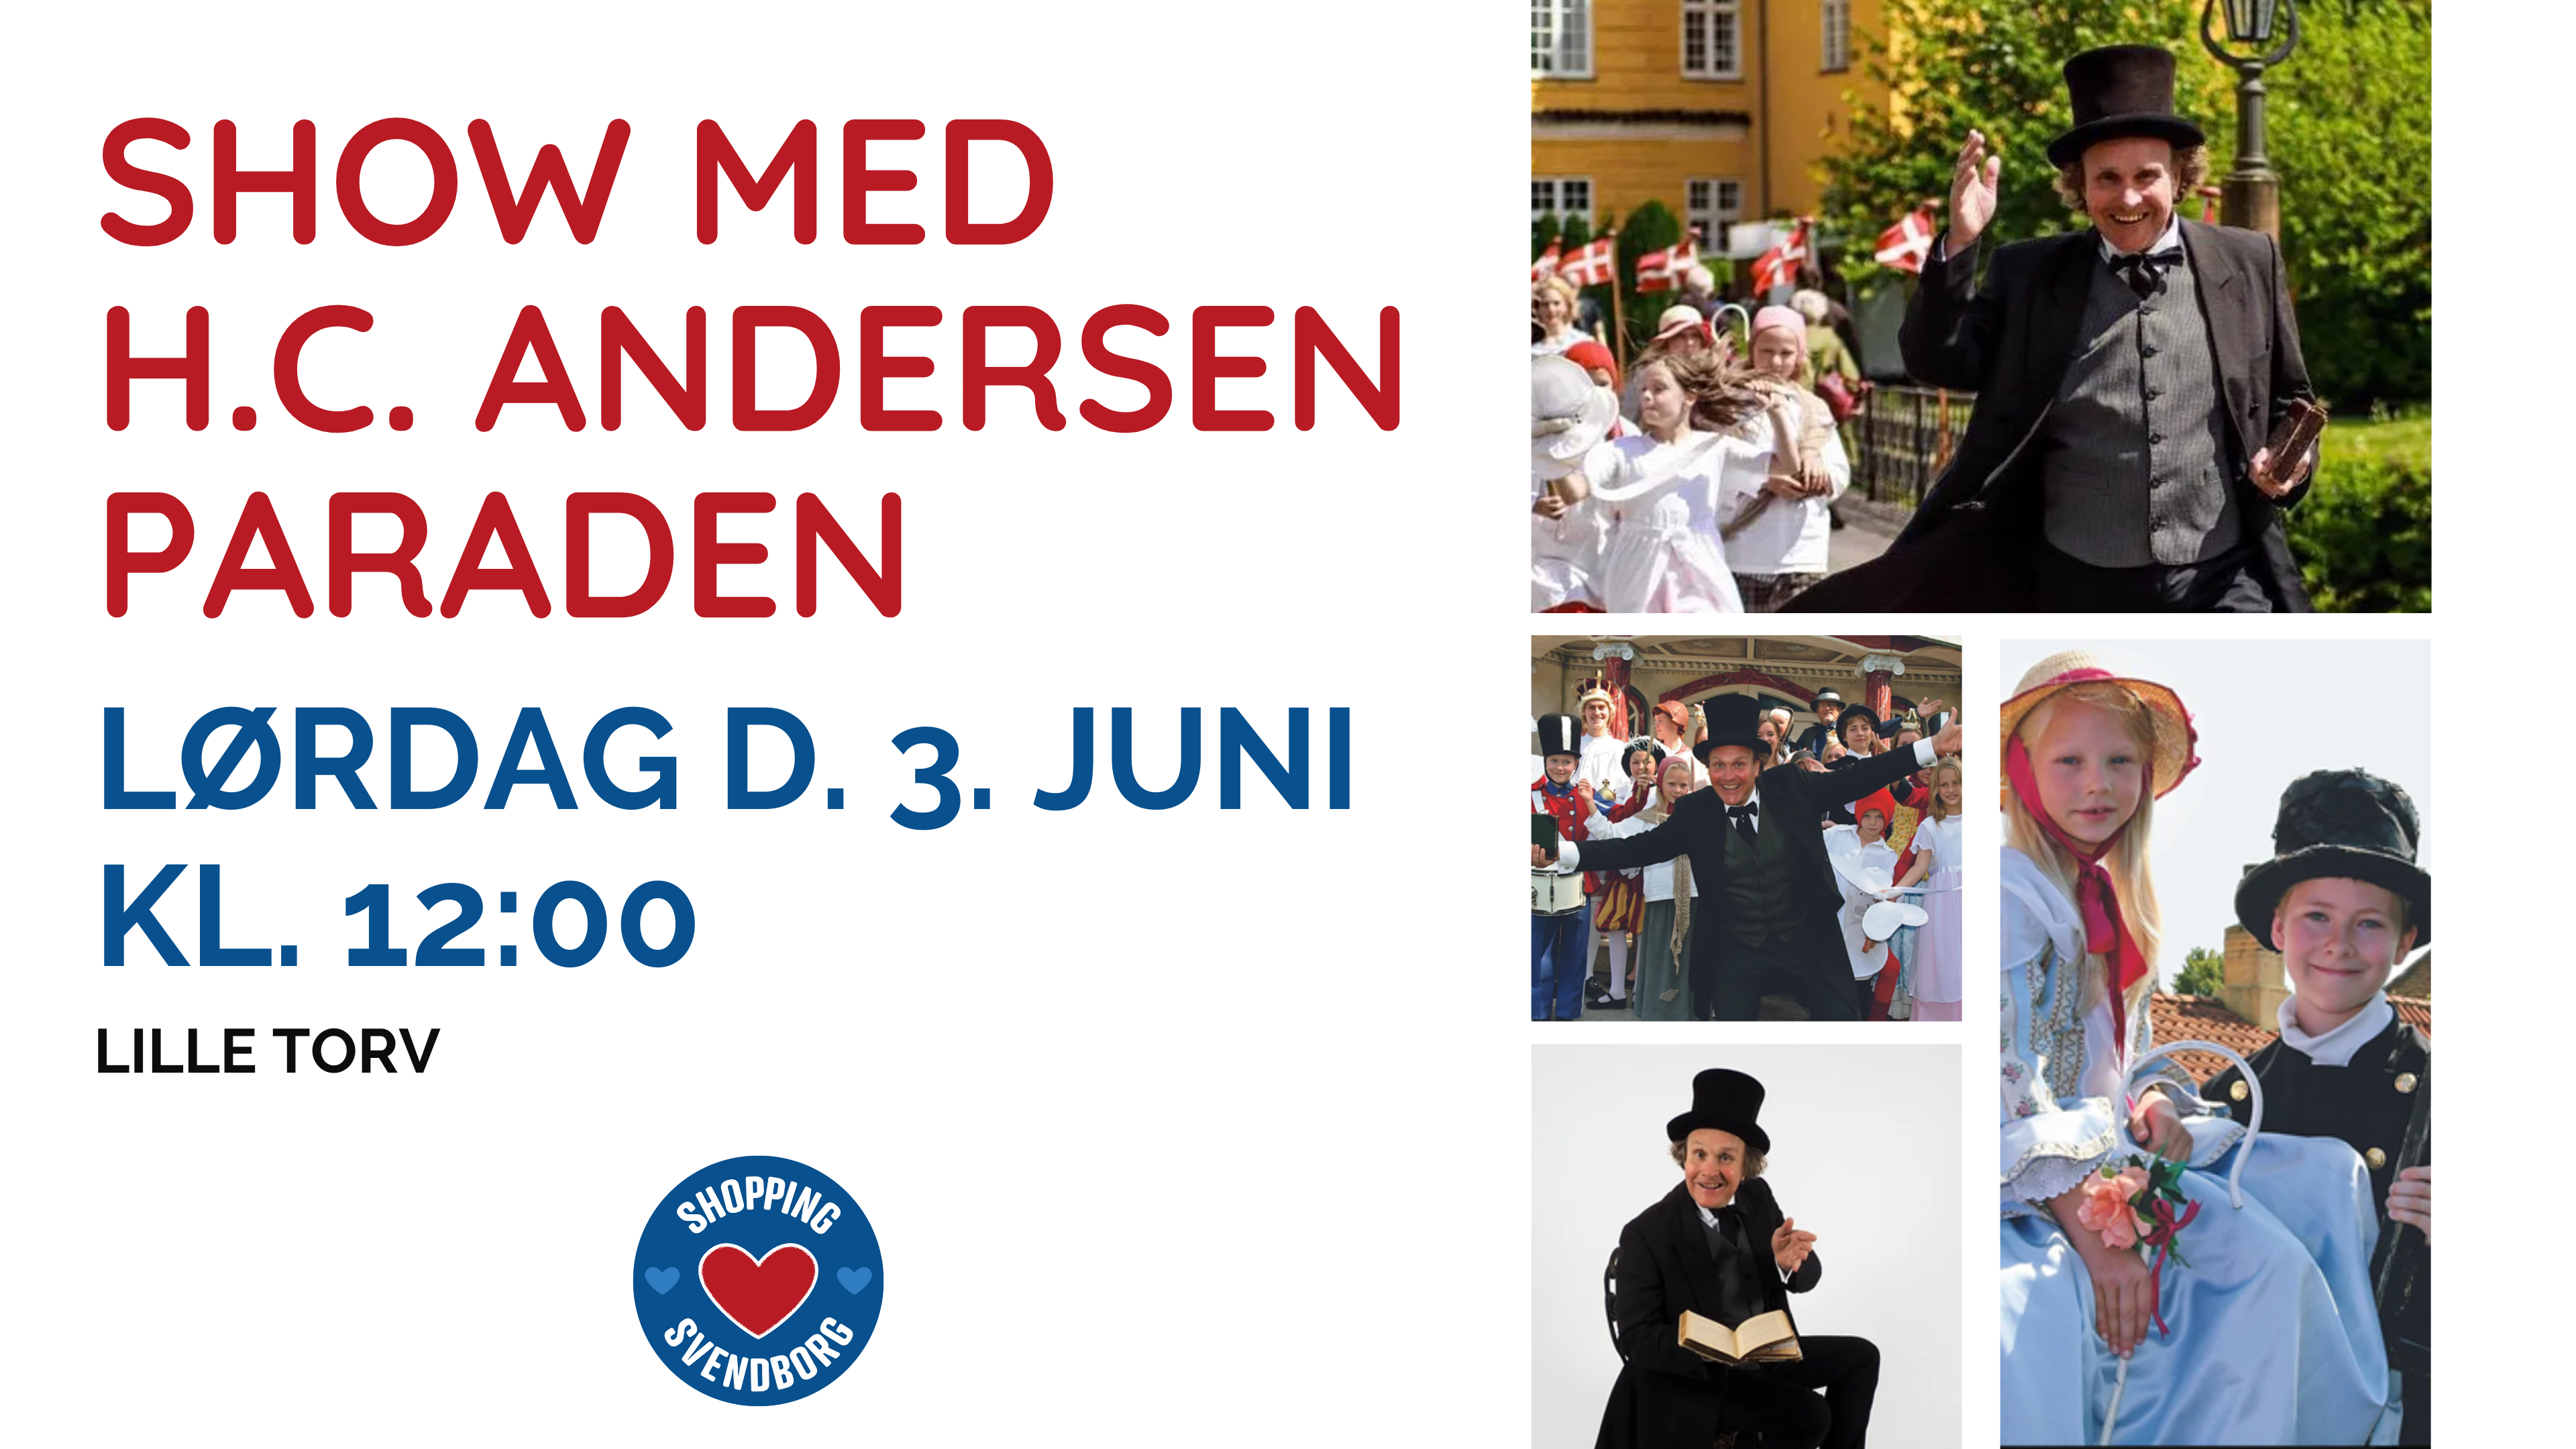 Show med H.C. Andersen Paraden i Svendborg